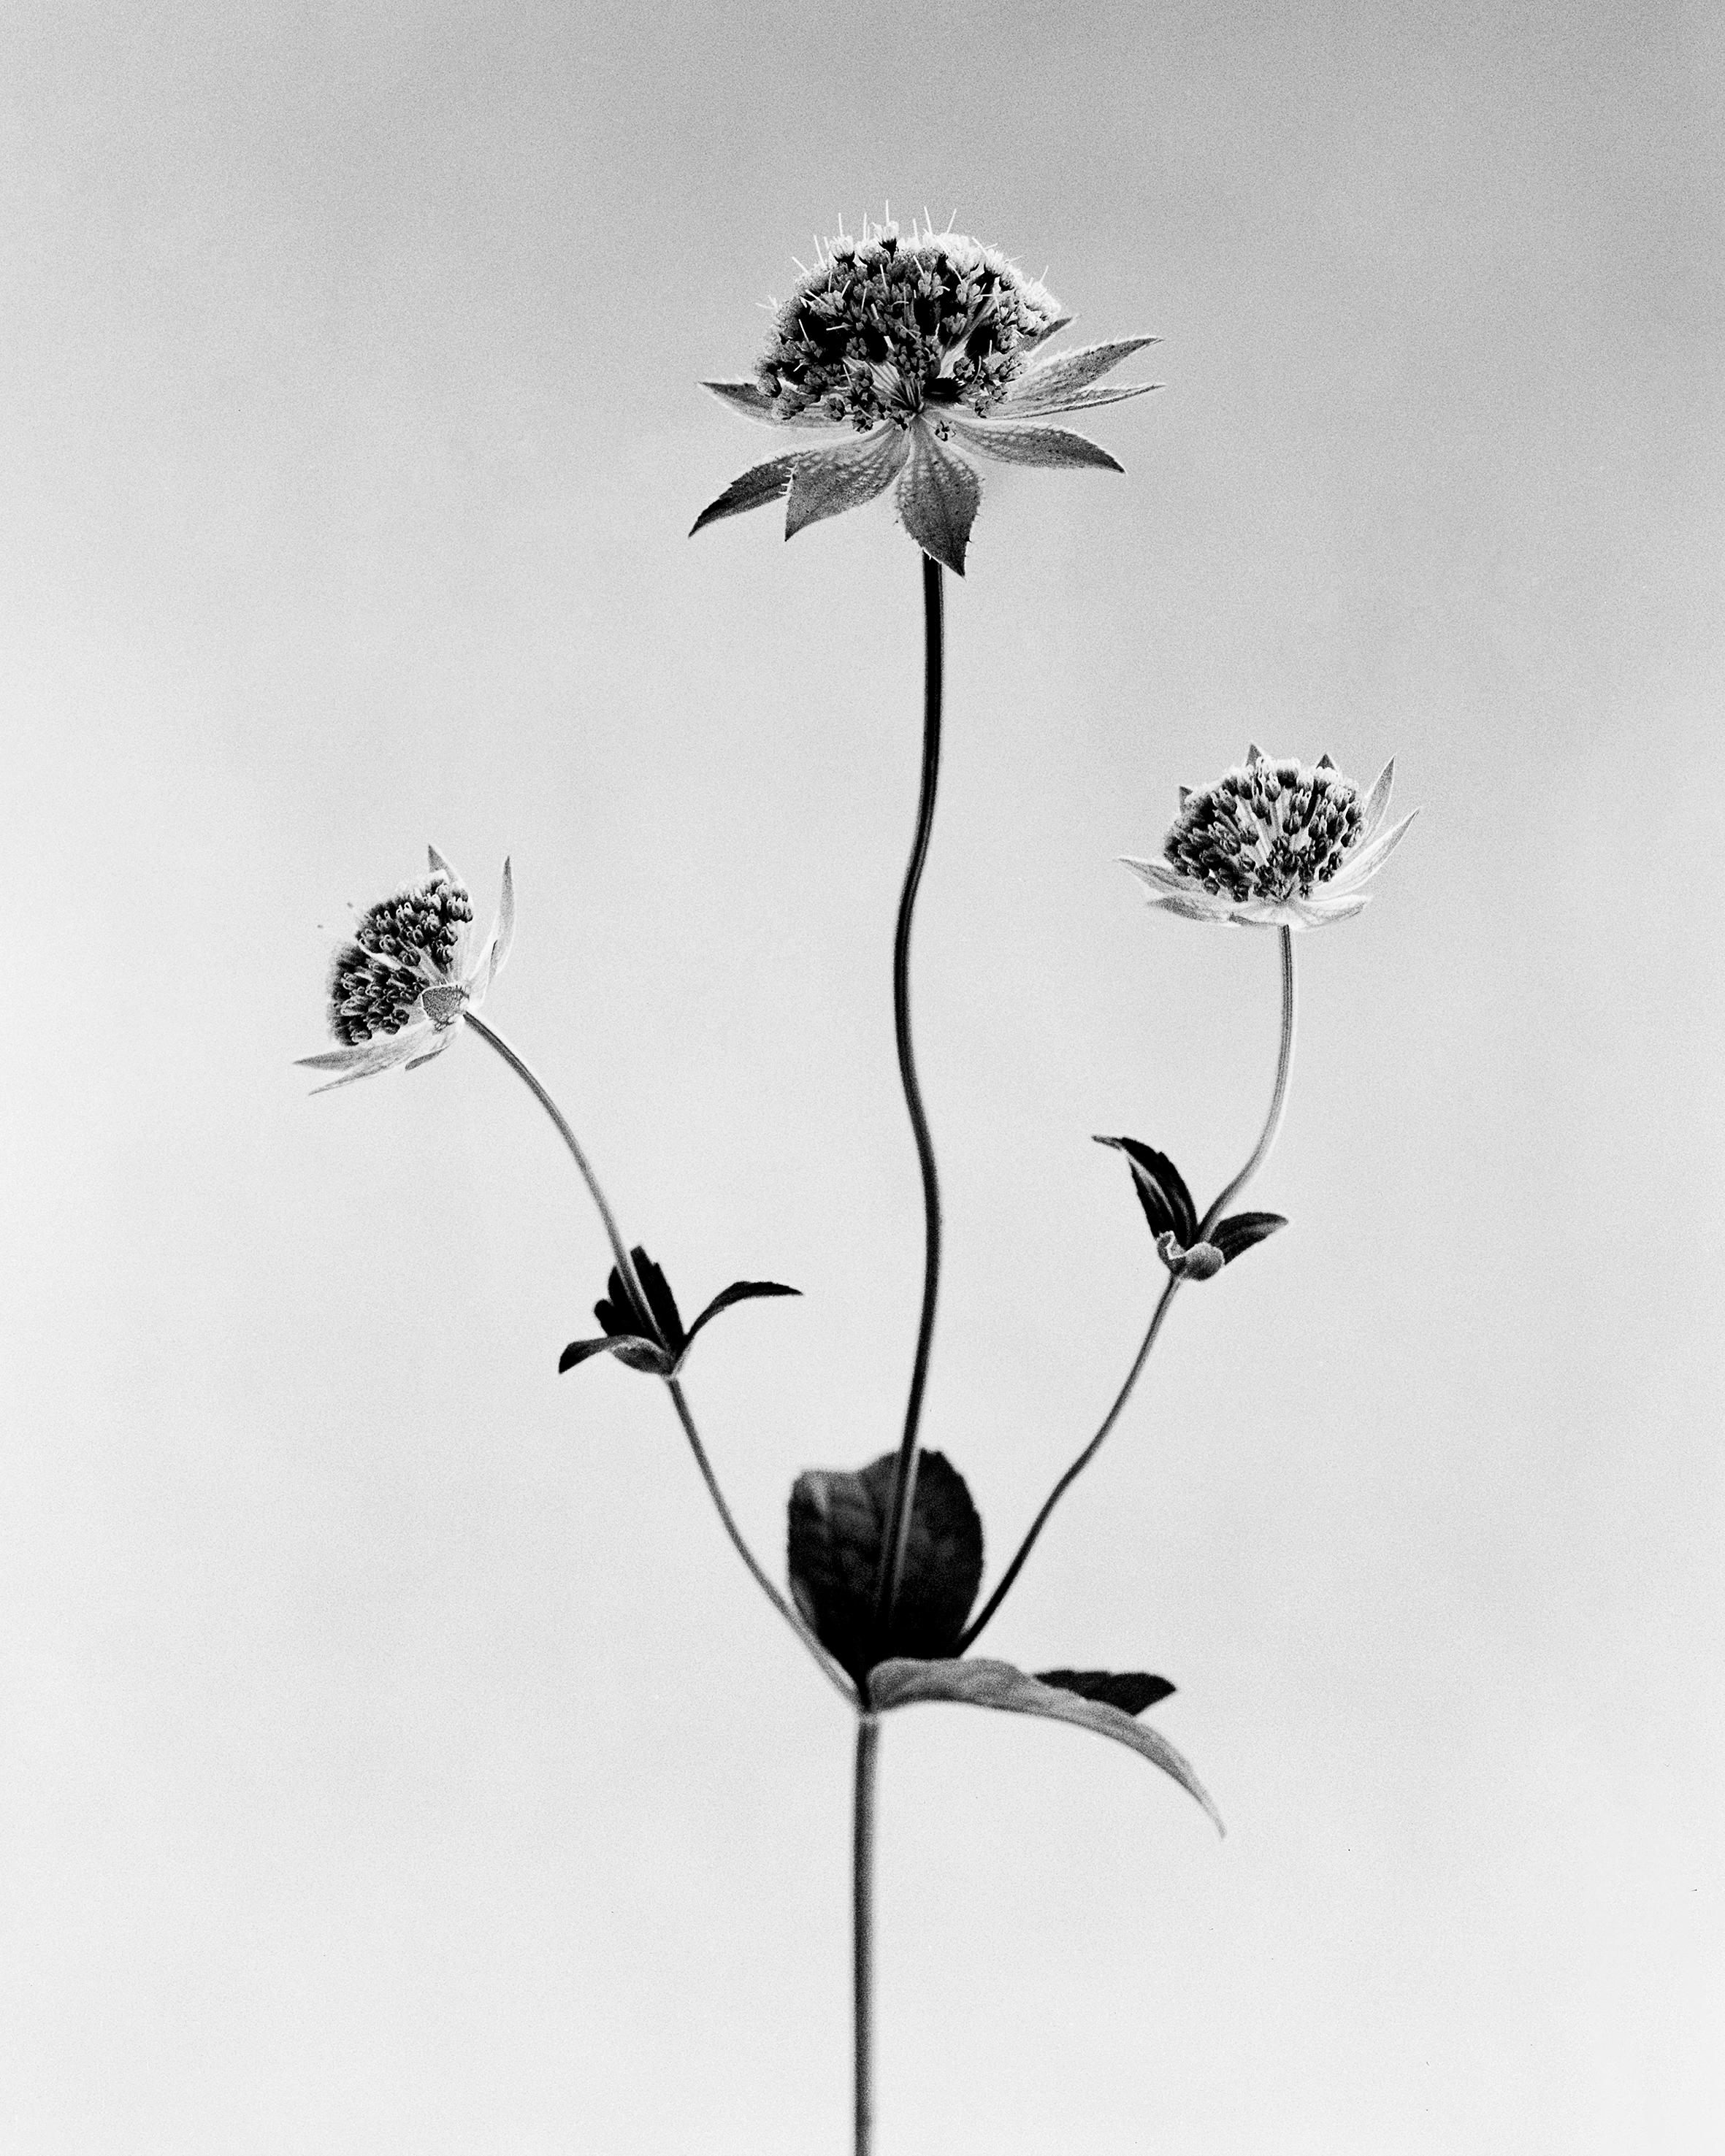 Ugne Pouwell Black and White Photograph – Astrantia – analoge Schwarz-Weiß-Blumenfotografie in limitierter Auflage von 20 Stück